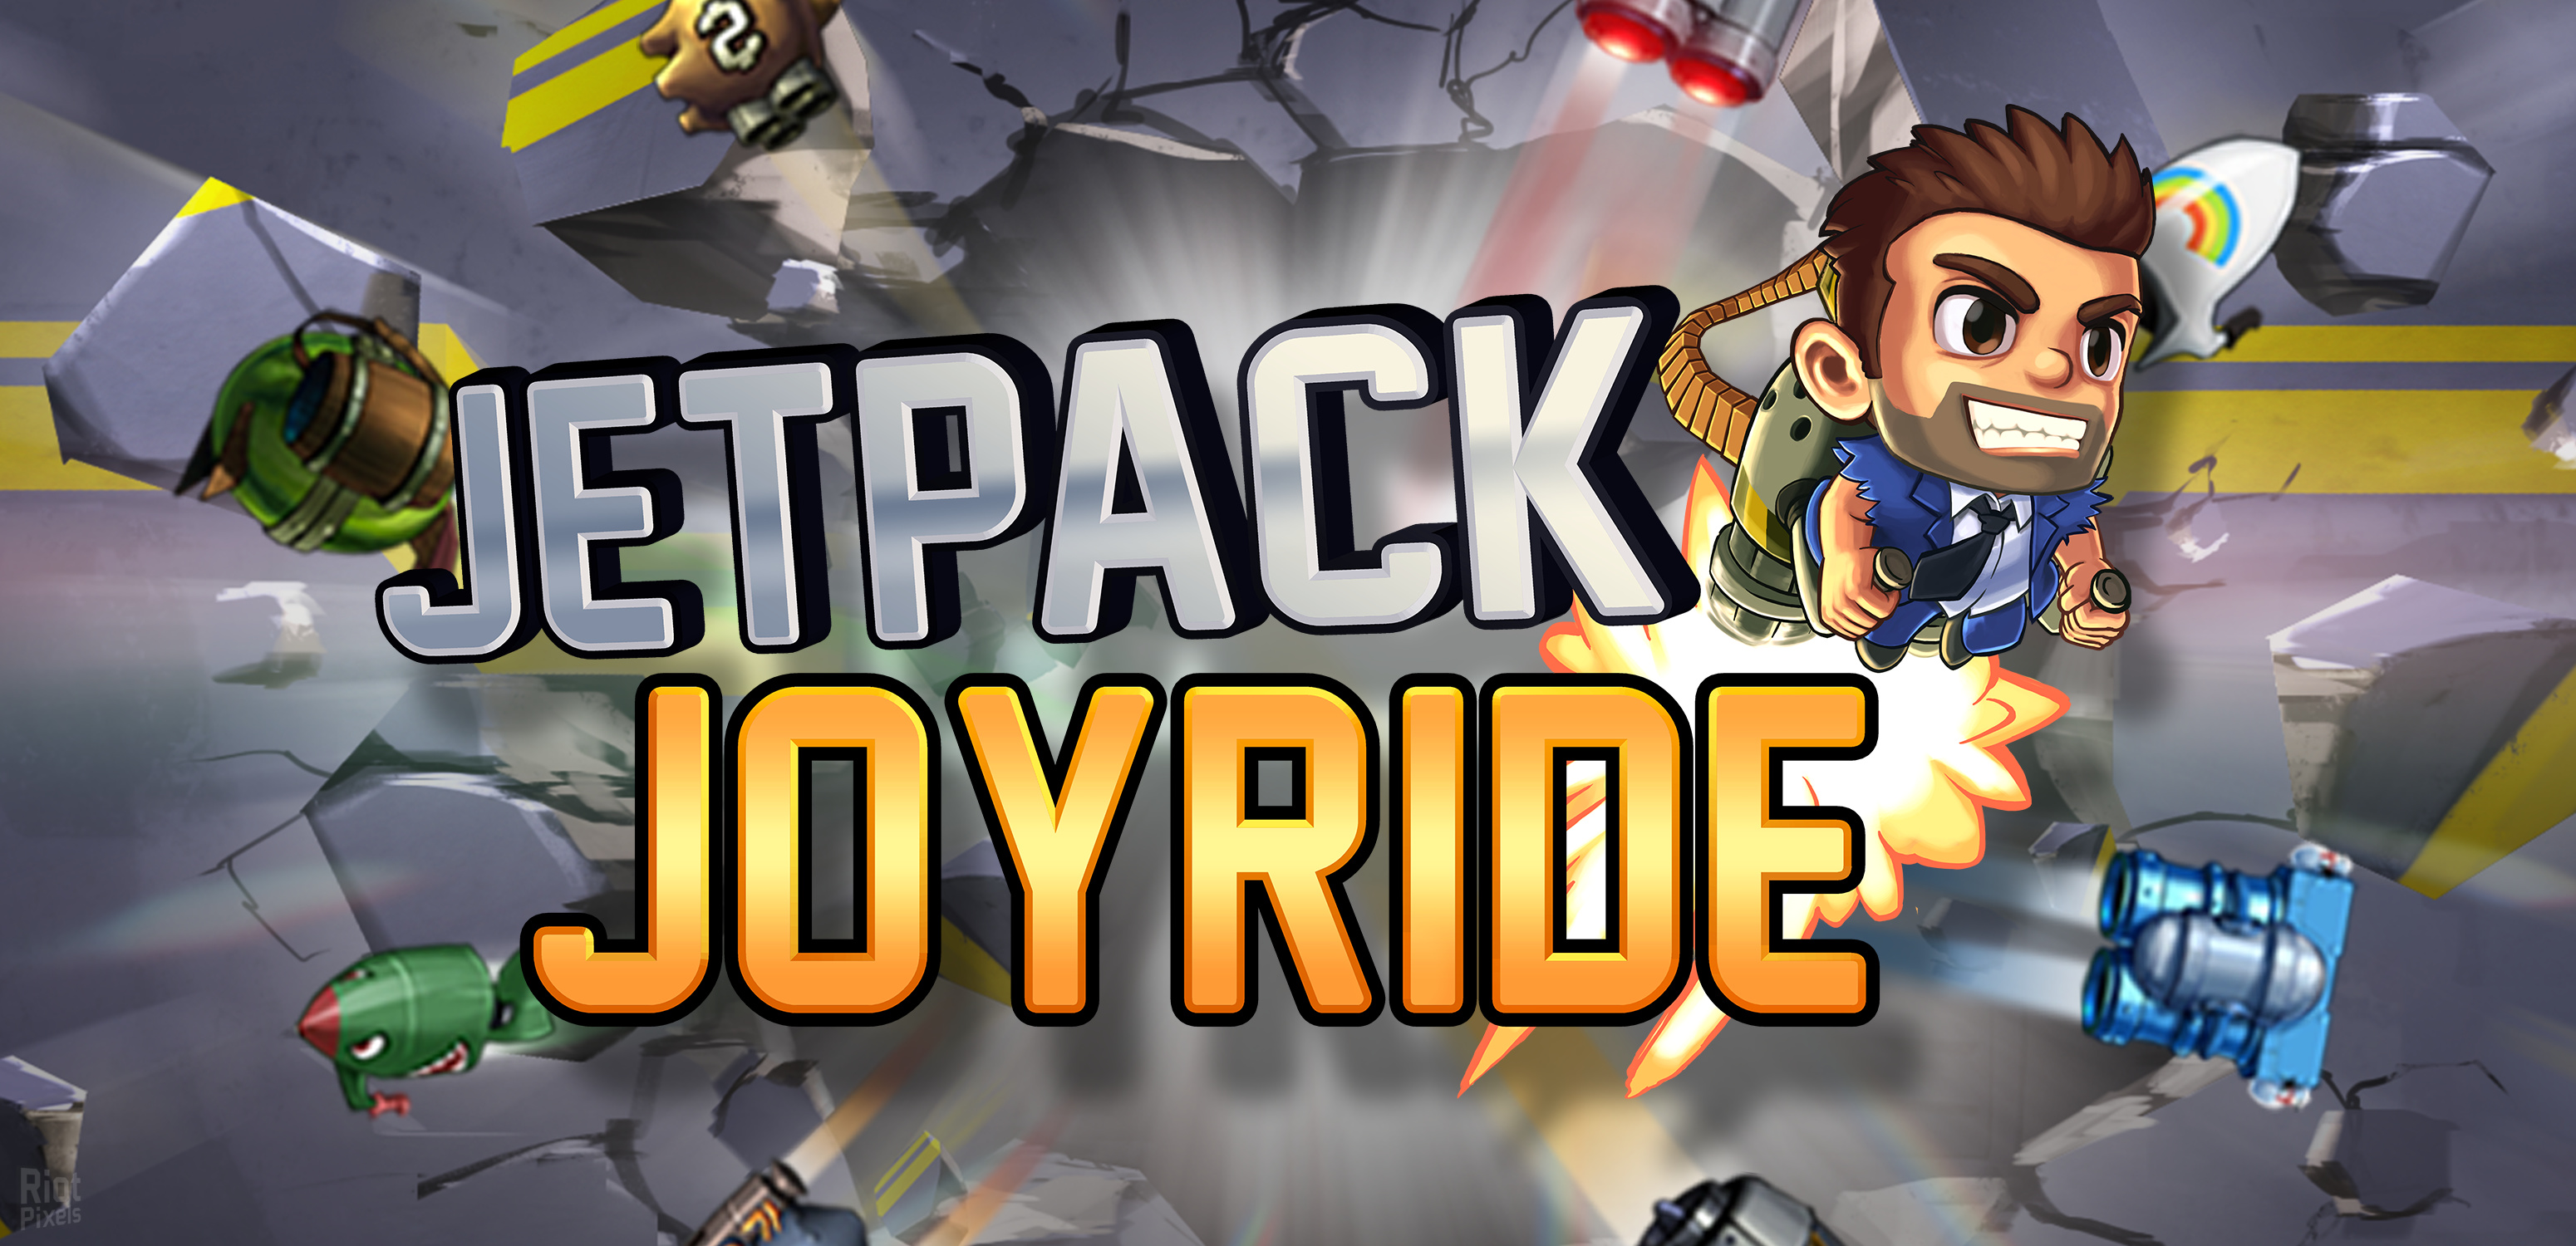 Jetpack Joyride - game artworks at Riot Pixels